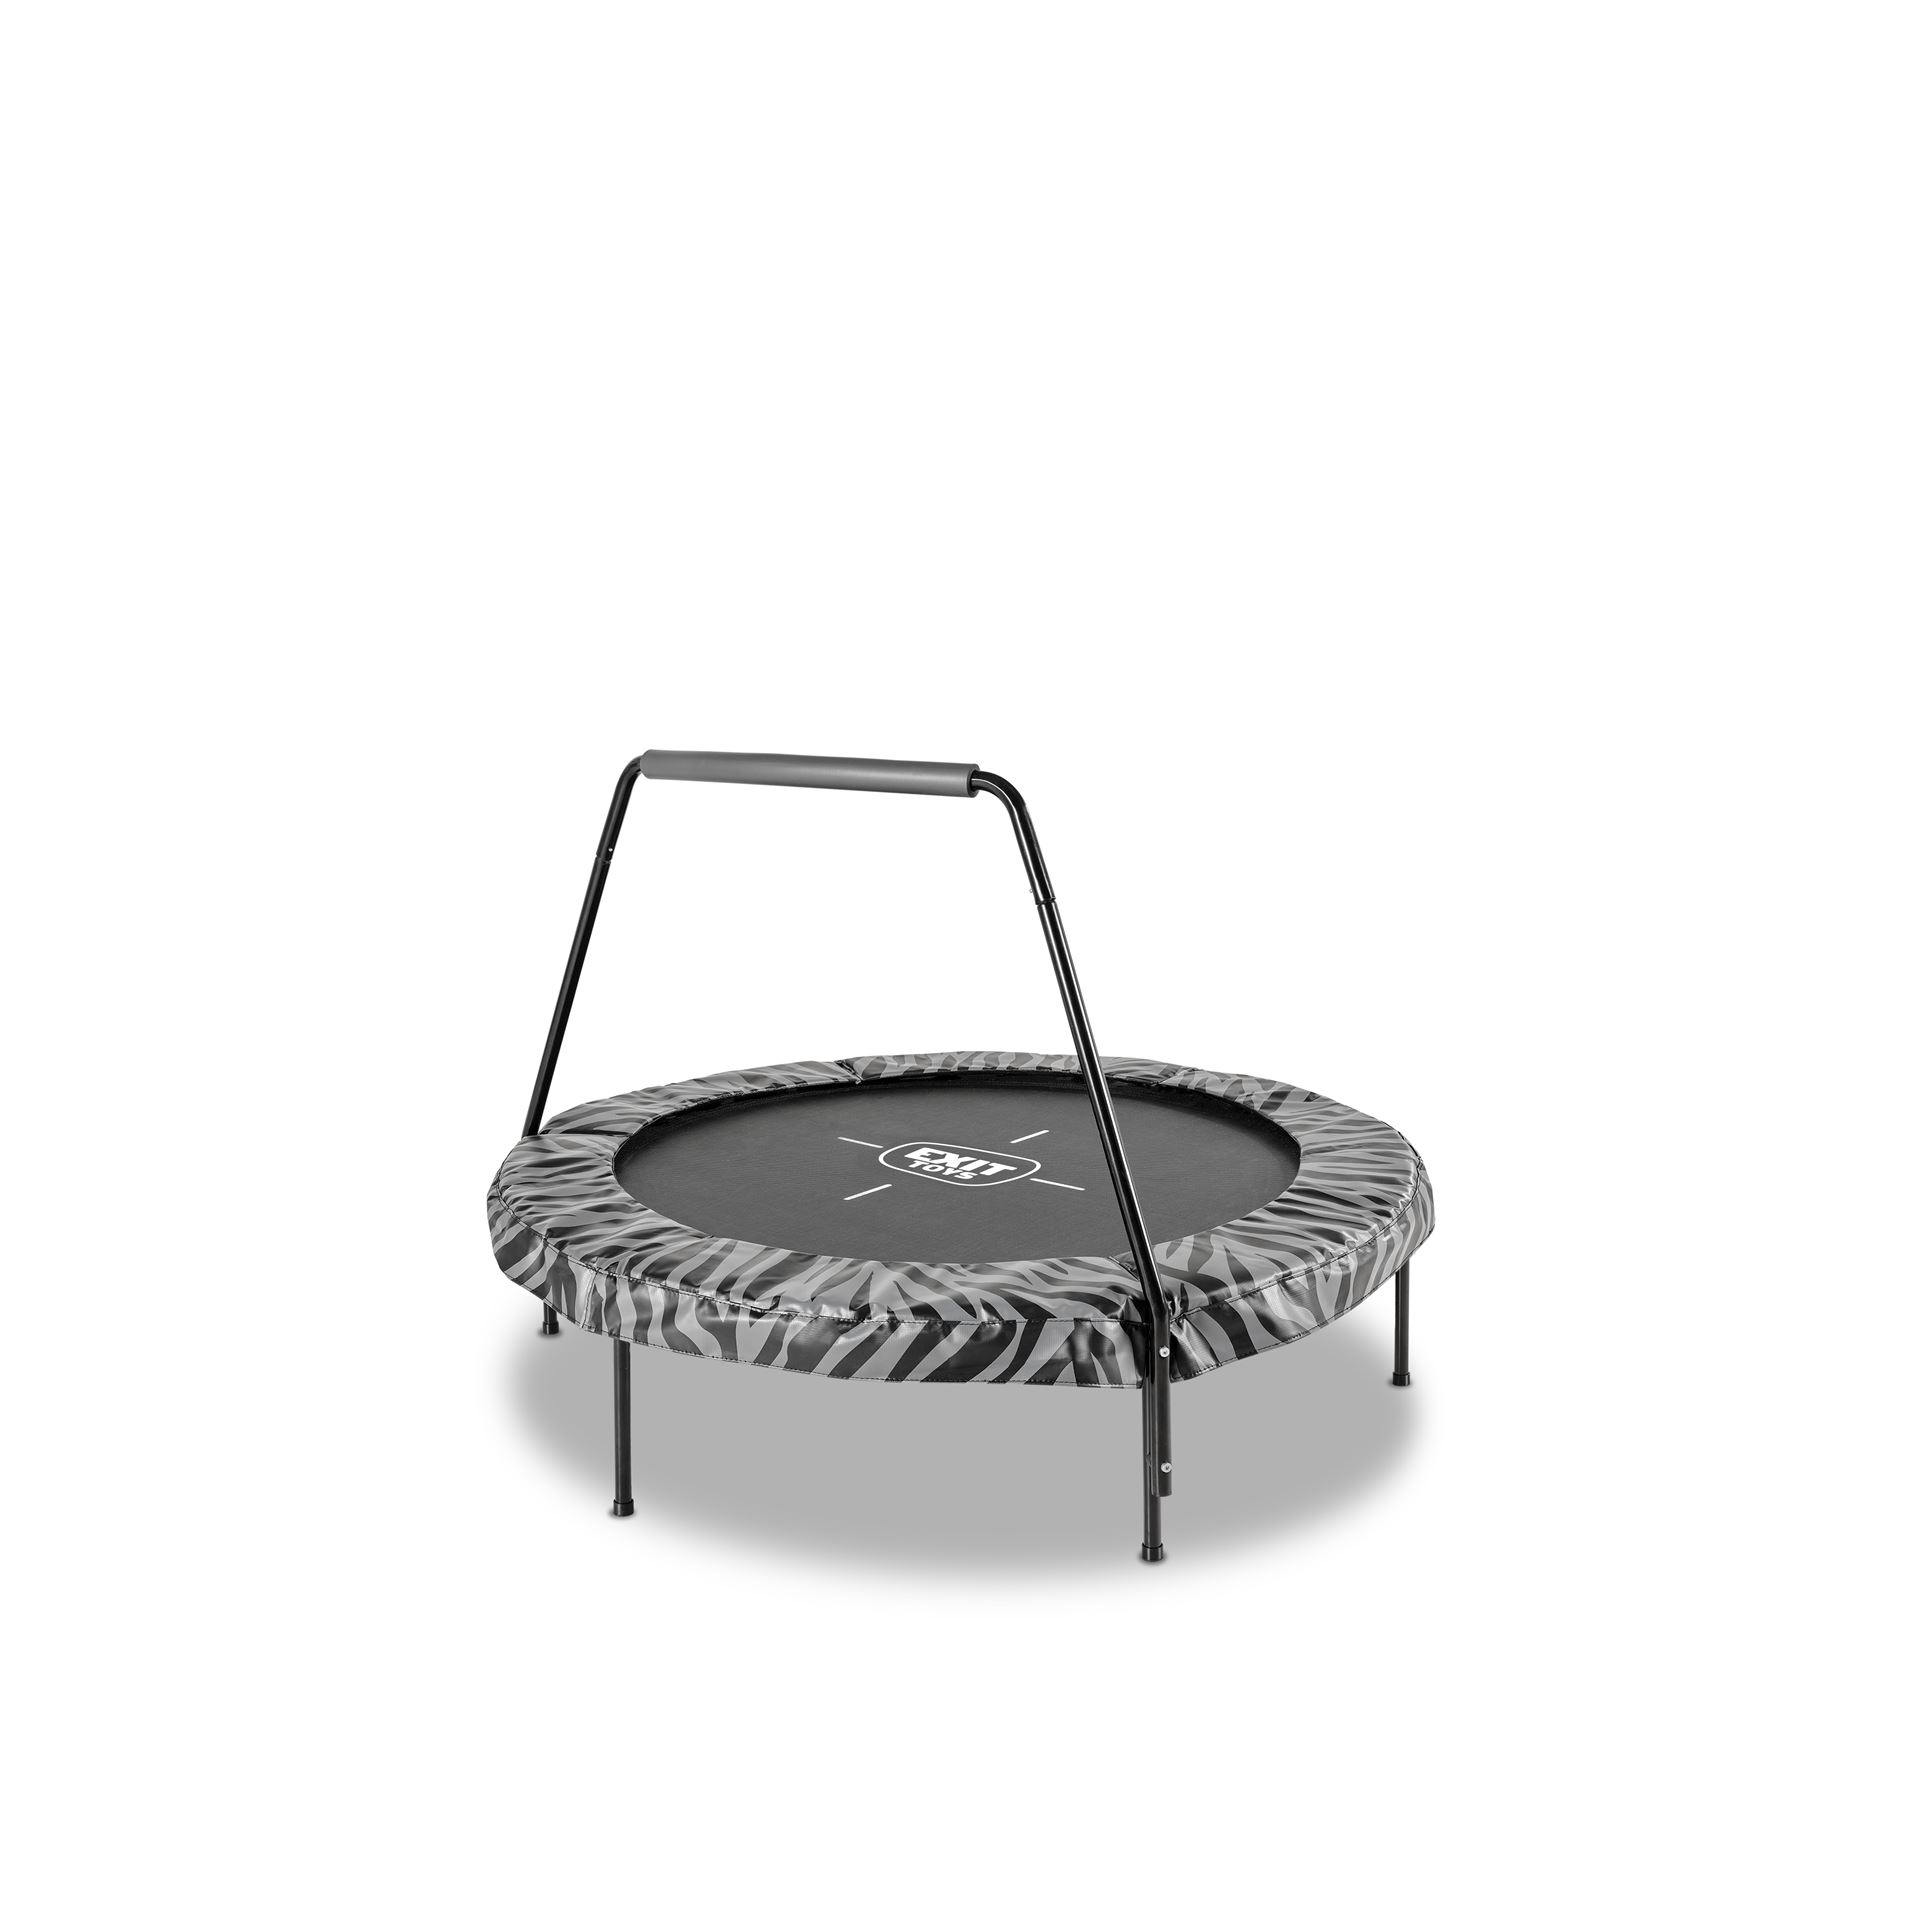 EXIT-Tiggy-junior-trampoline-met-beugel-140cm-zwart-grijs